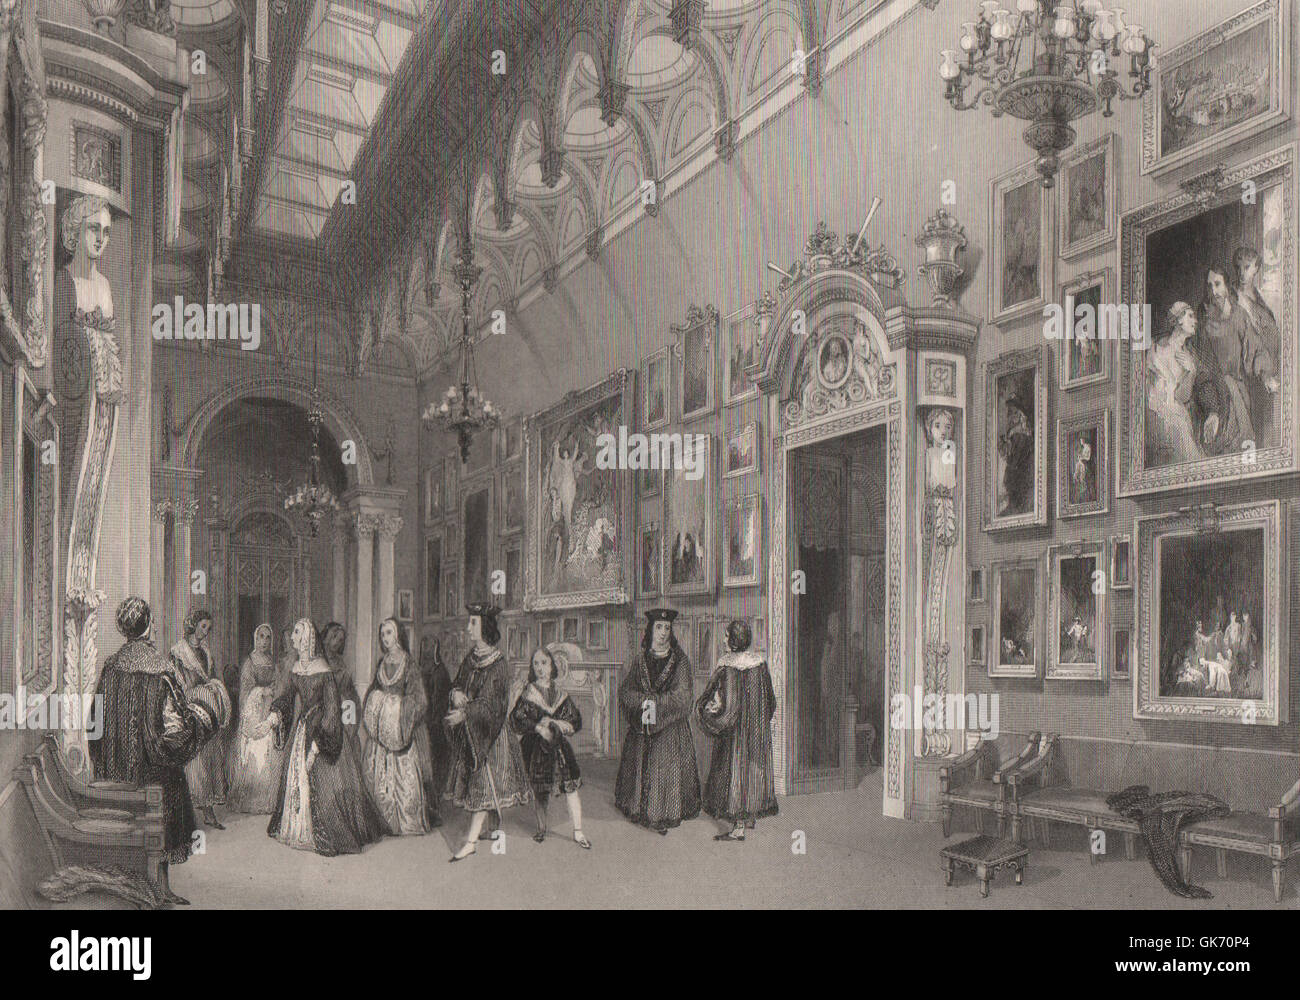 La Galería de imágenes, el Palacio de Buckingham. Londres interiores, grabado antiguo 1841 Foto de stock